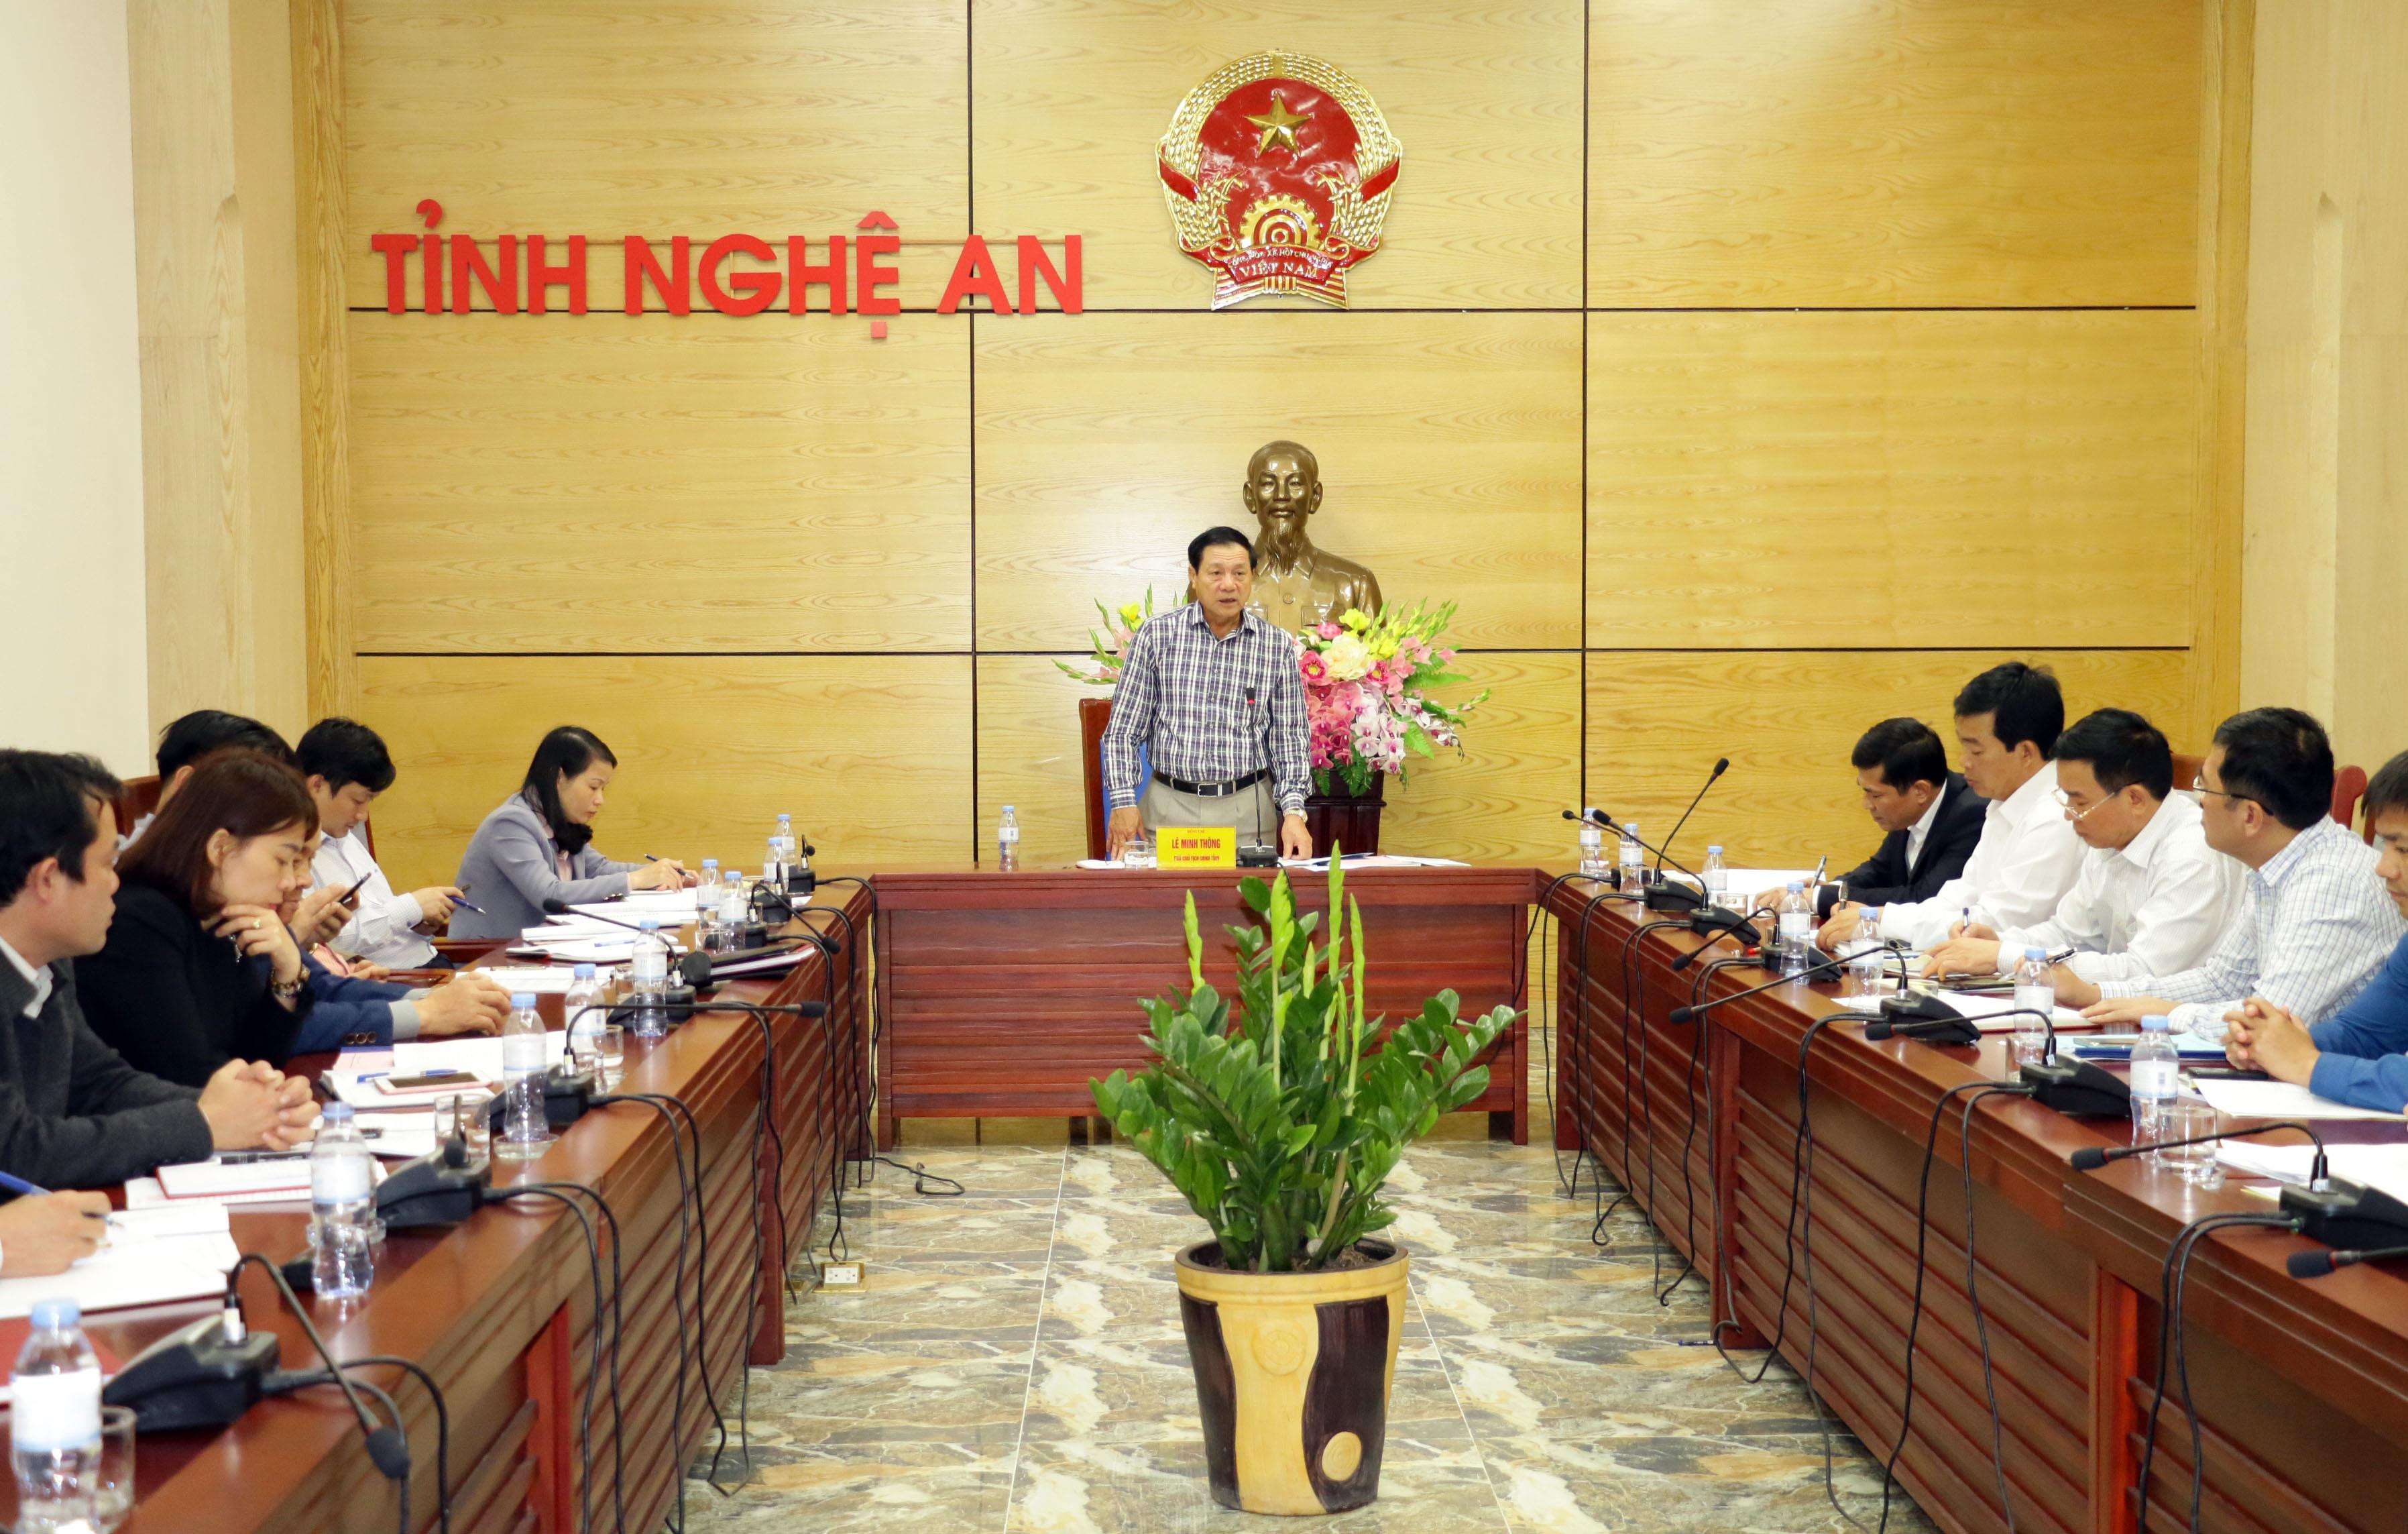 Đồng chí Lê Minh Thông phát biểu và chỉ đạo tại cuộc họp. Ảnh: Mỹ Hà